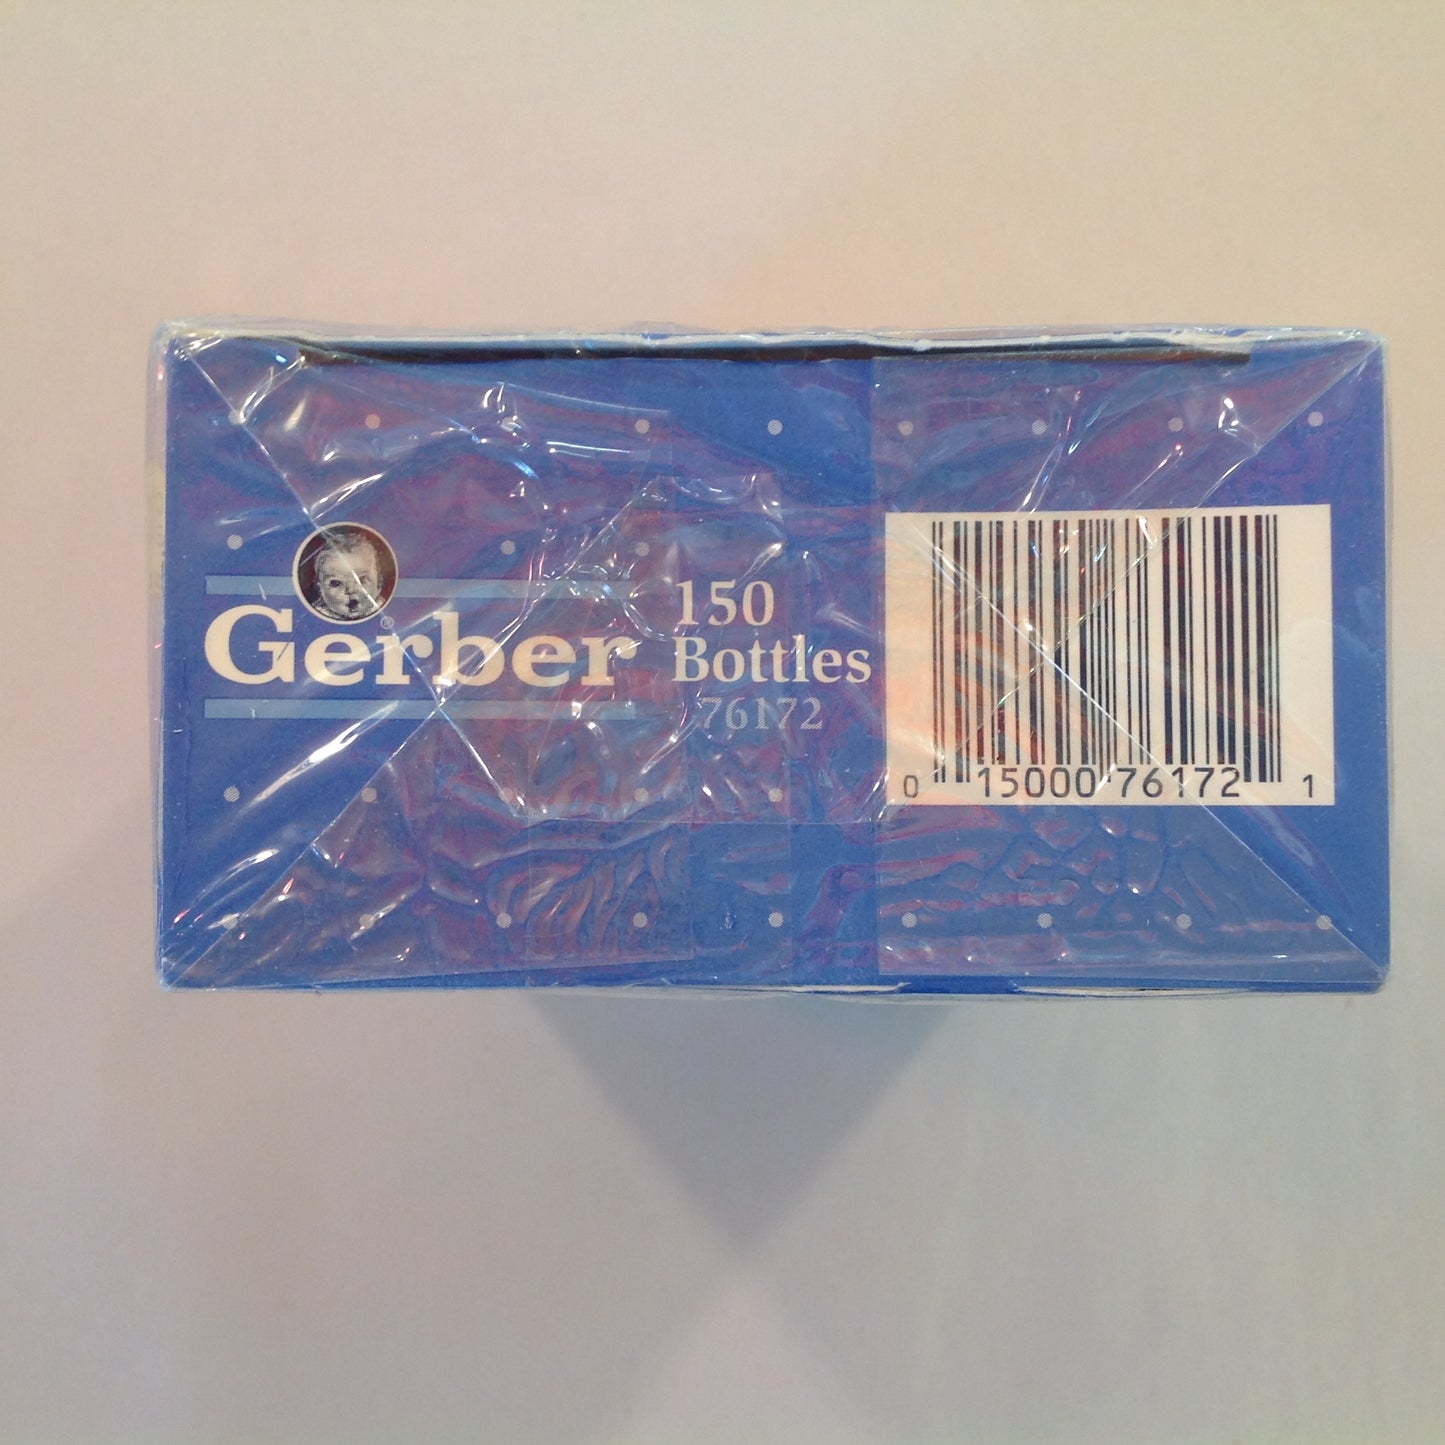 Vintage 1992 NOS Gerber 150 Pre-Sterilized 8 Fl Oz Disposable Bottles Sealed